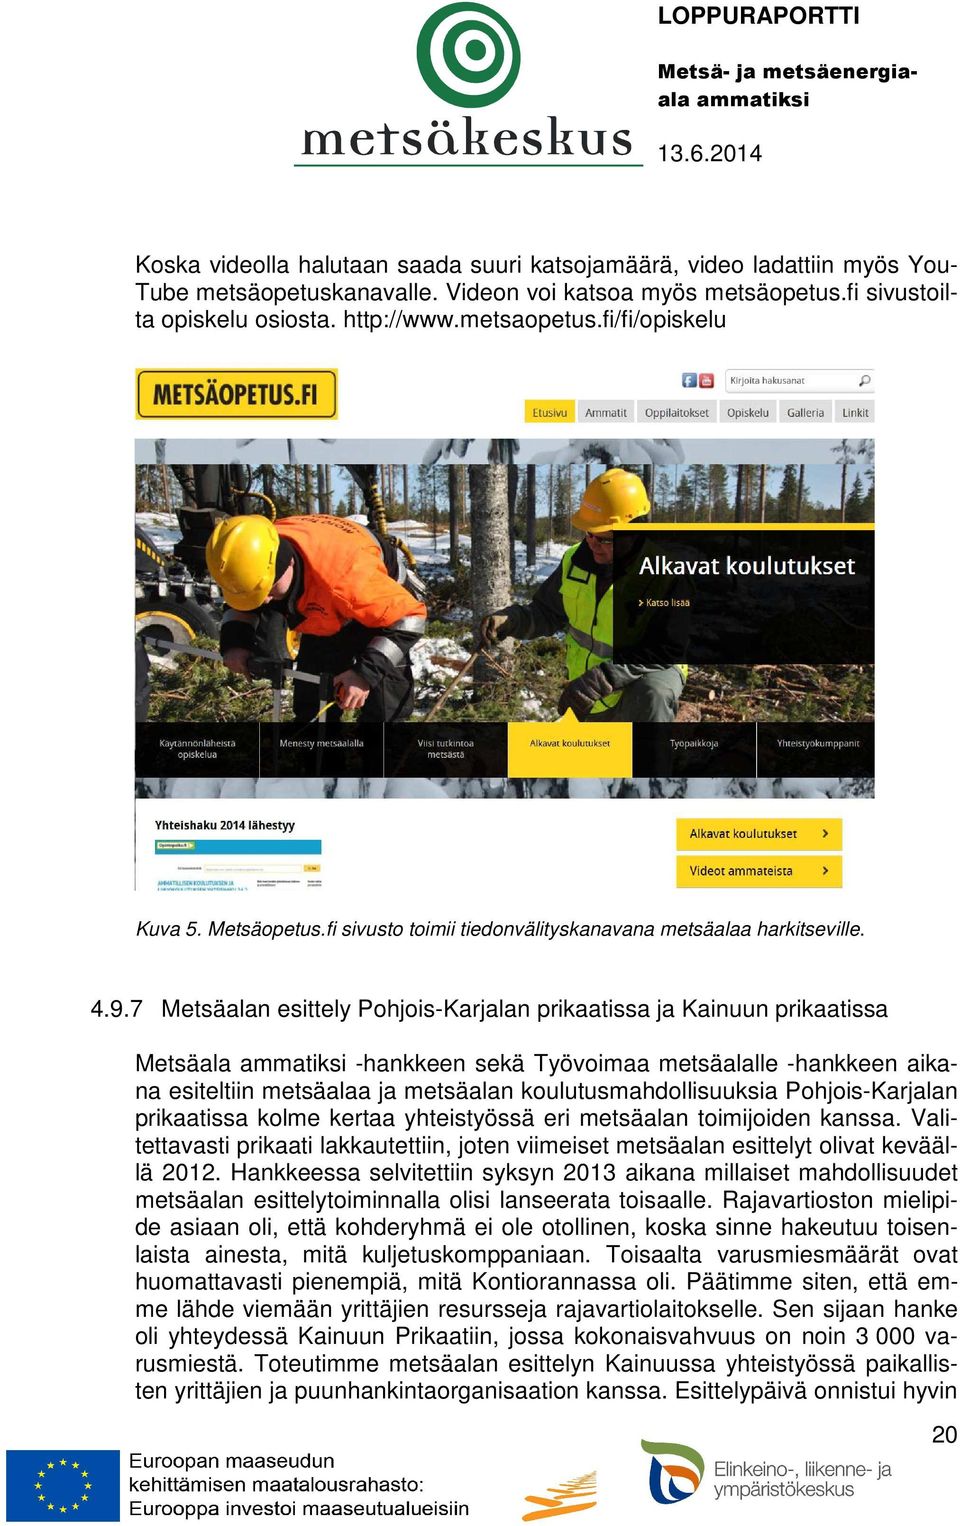 7 Metsäalan esittely Pohjois-Karjalan prikaatissa ja Kainuun prikaatissa Metsäala -hankkeen sekä Työvoimaa metsäalalle -hankkeen aikana esiteltiin metsäalaa ja metsäalan koulutusmahdollisuuksia